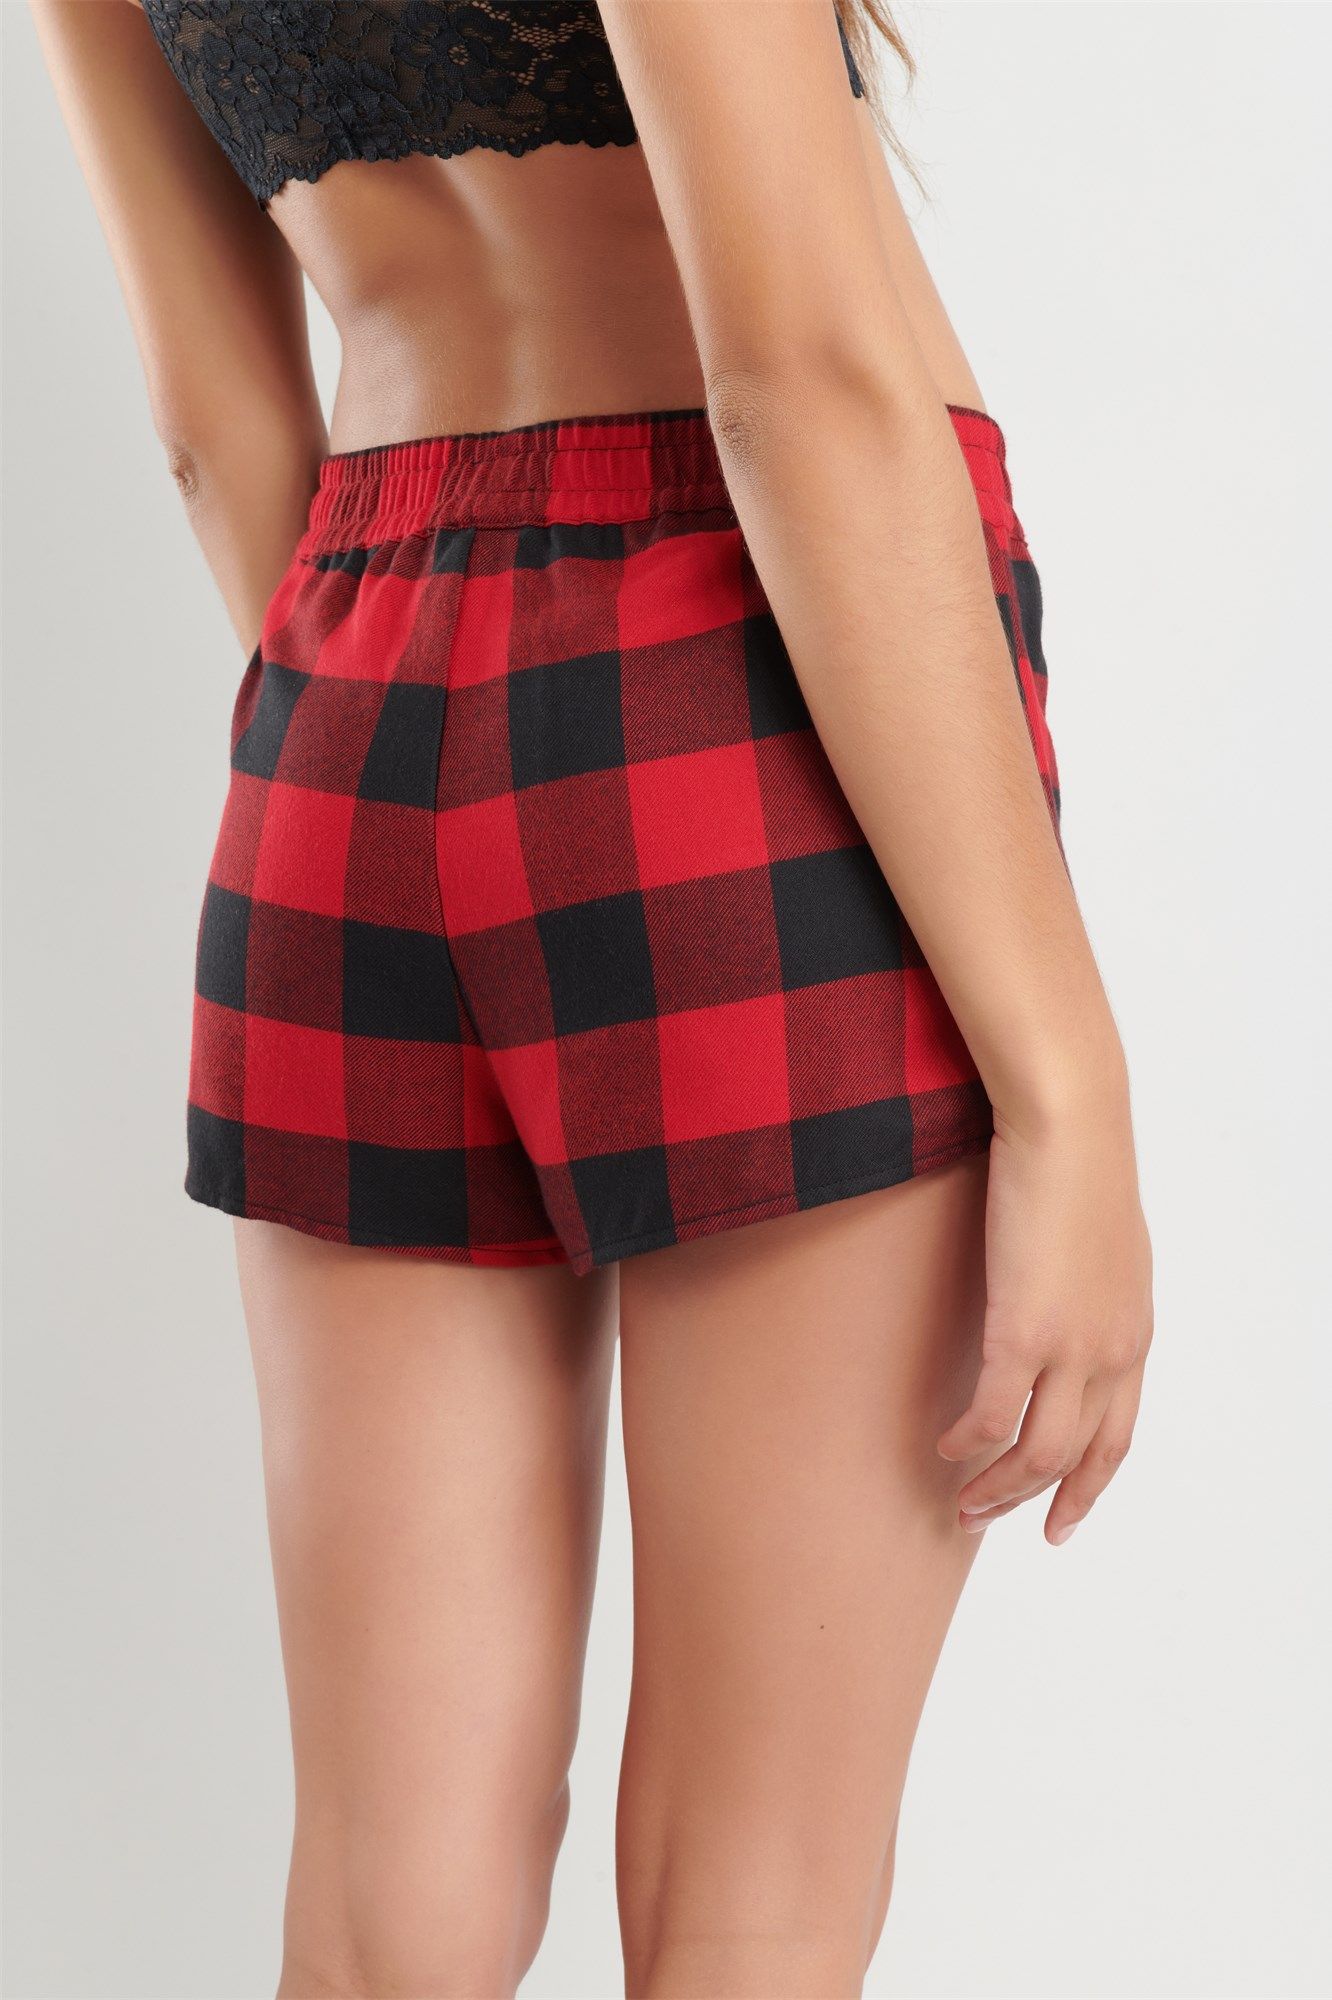 Flannel Sleep Shorts | Garage.ca / ShopGarageOnline.com